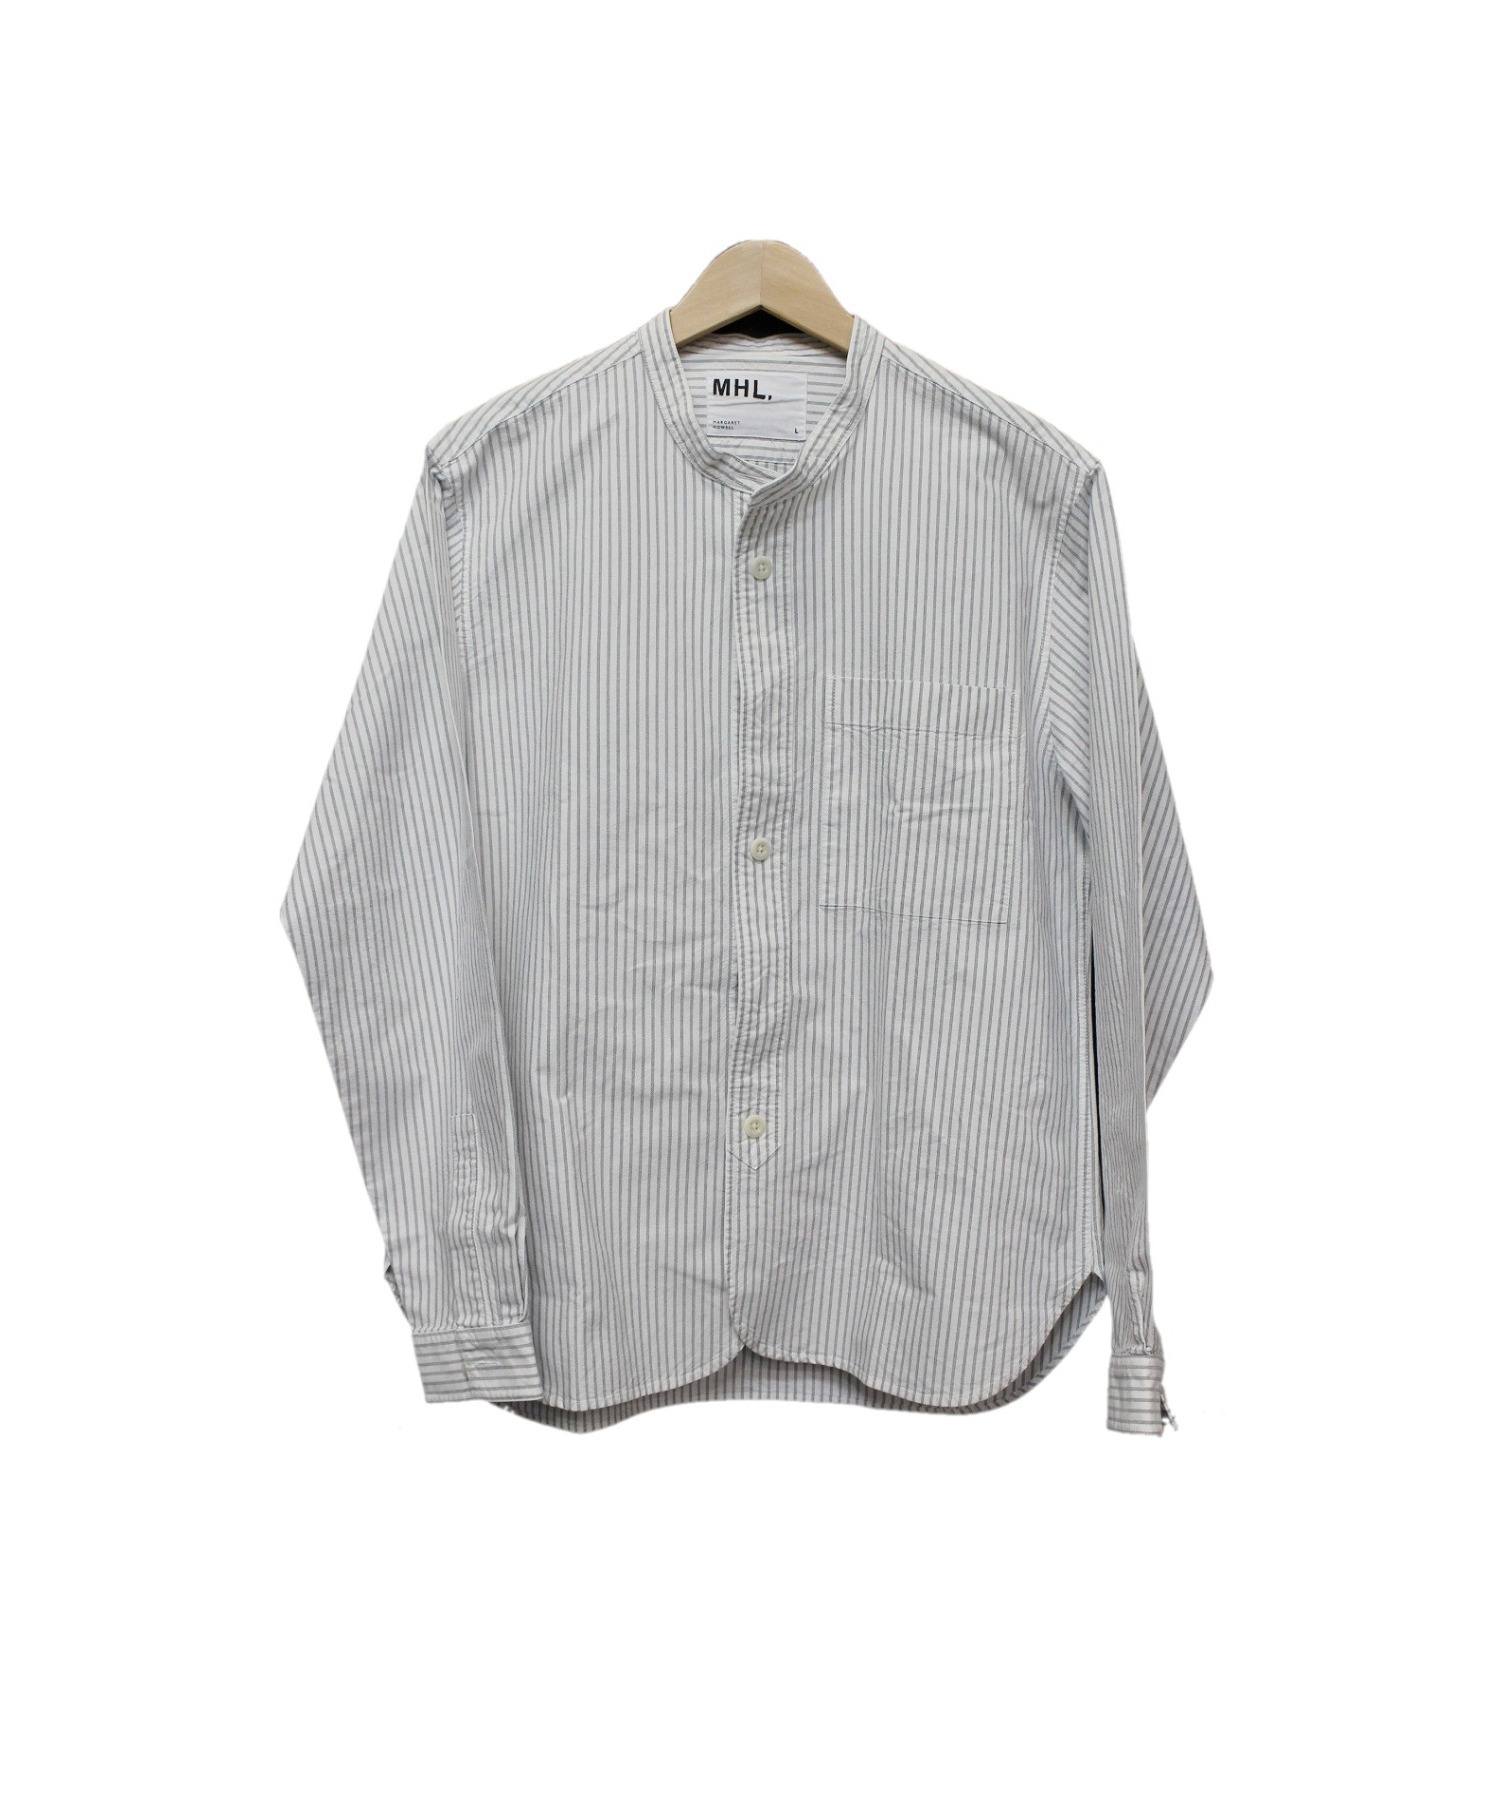 MHL (エムエイチエル) ストライプバンドカラーシャツ ホワイト×グレー サイズ:L